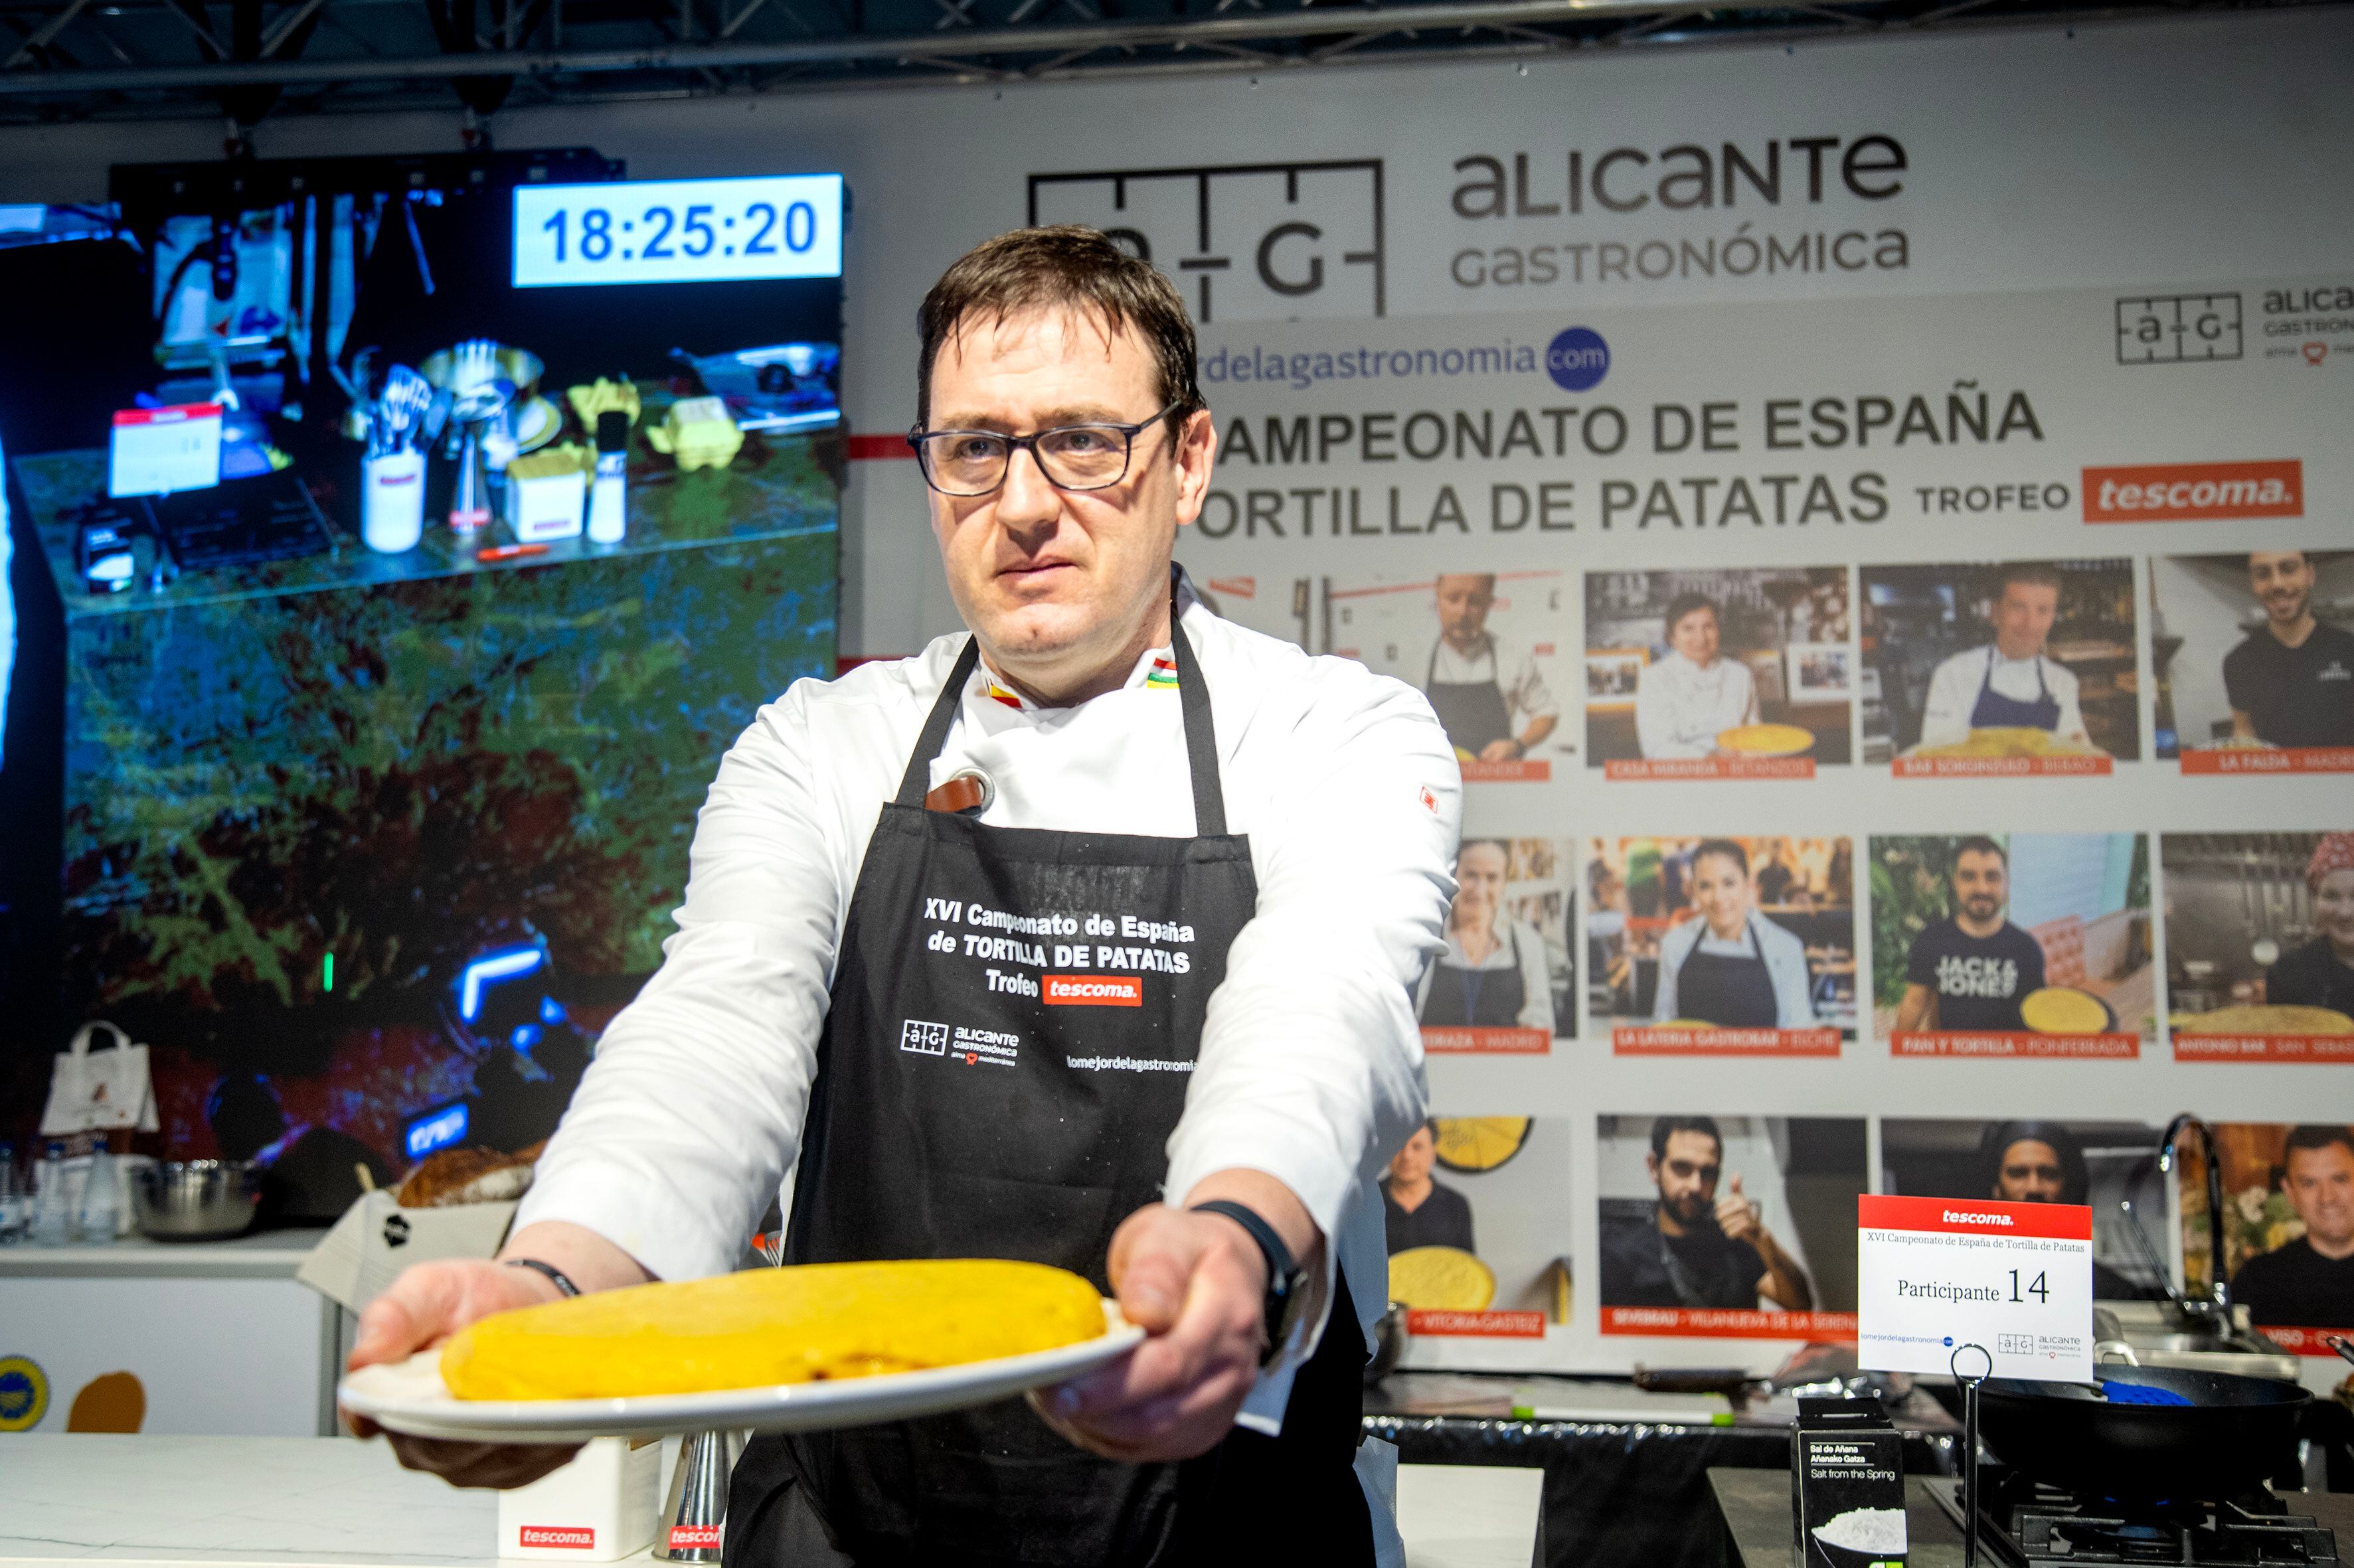 El cocinero Carlos Olabuenaga, del restaurante Tizona, en Logroño, presenta la tortilla que elaboró con 18 huevos, en una imagen proporcionada por la organización del concurso.